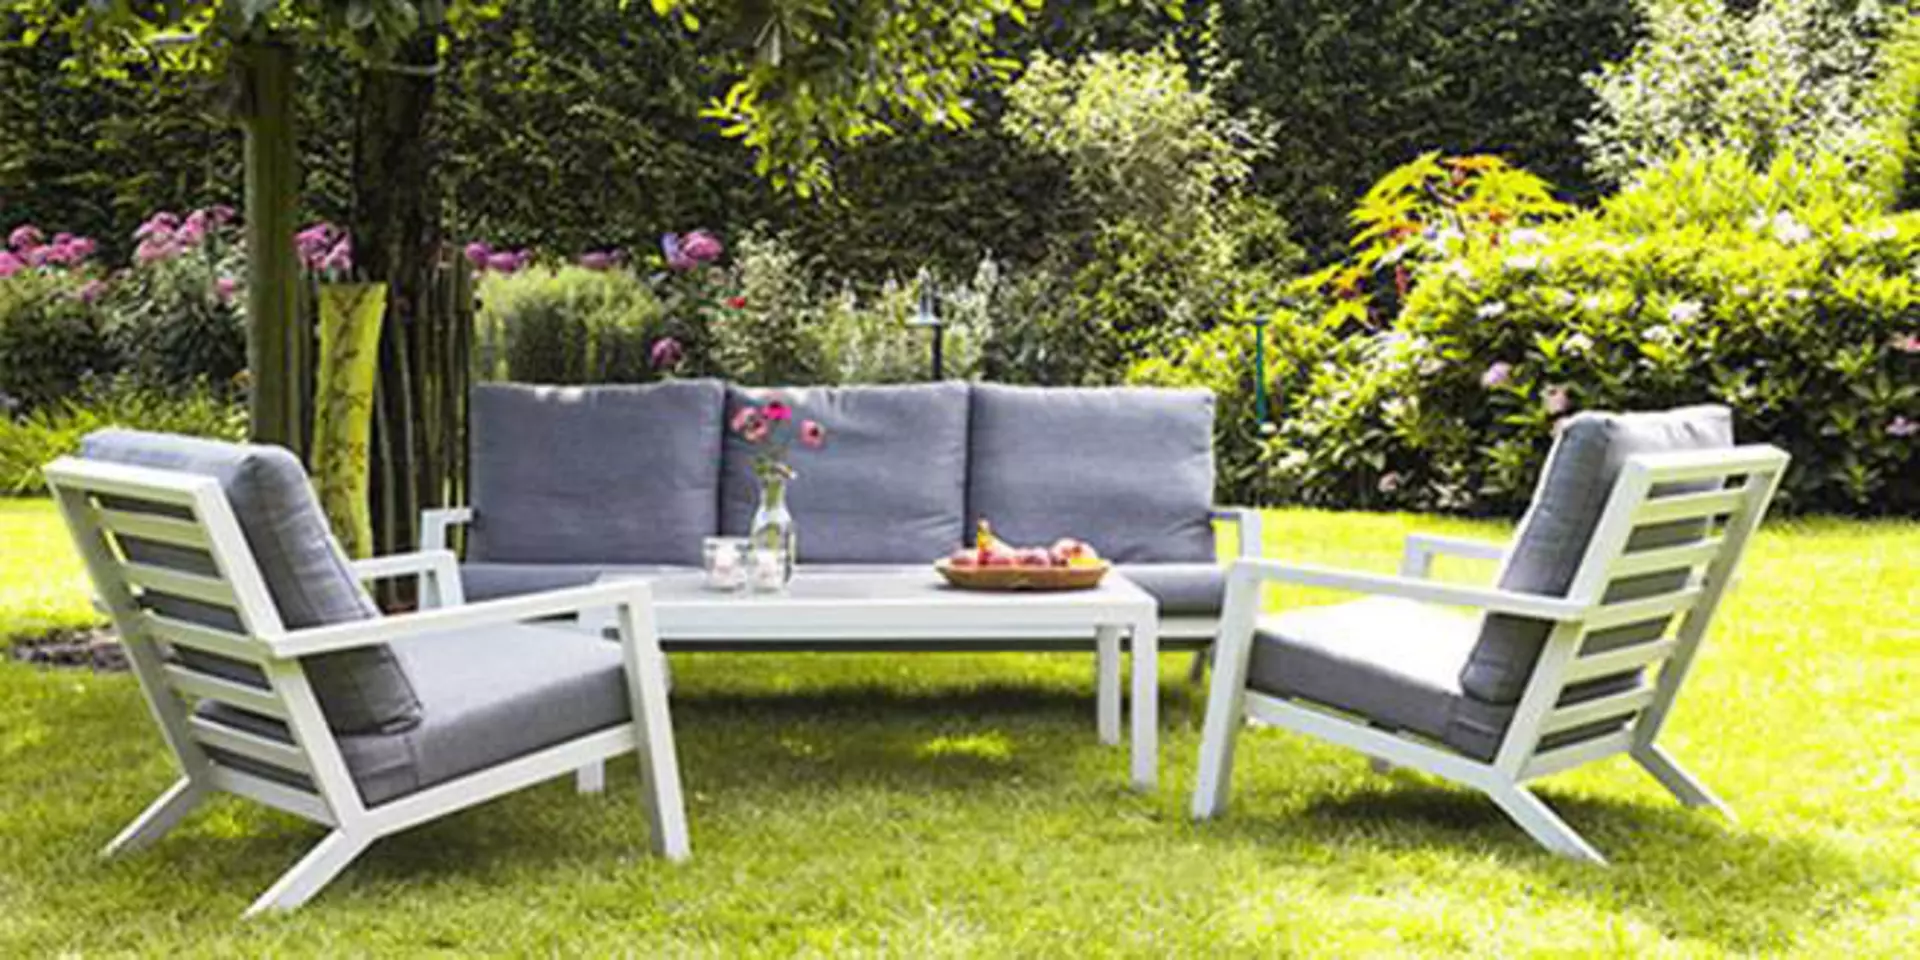 Titelbild der Marke Outdoor zeigt ein Gartenmöbelset in weiß mit grauen Polstern.